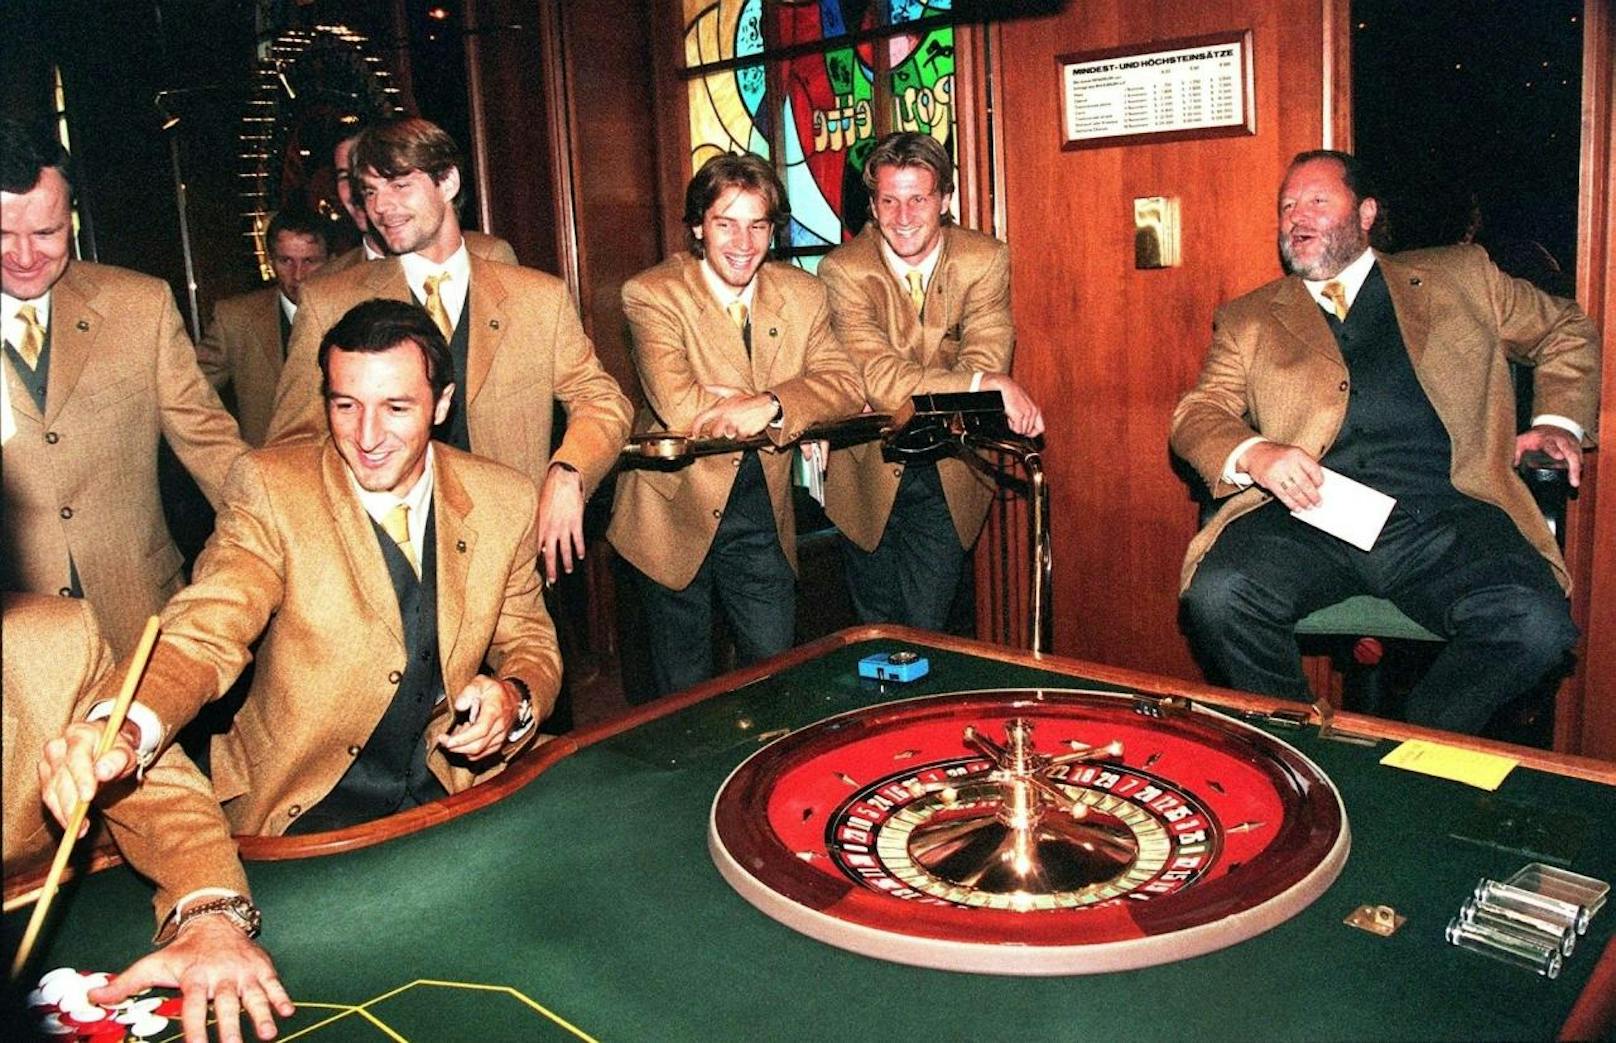 Ein Bild für die Ewigkeit. Hannes Kartnig, Ranko Popovic, Hannes Reinmayr, Jan-Pieter Martens, Markus Schopp im Casino.